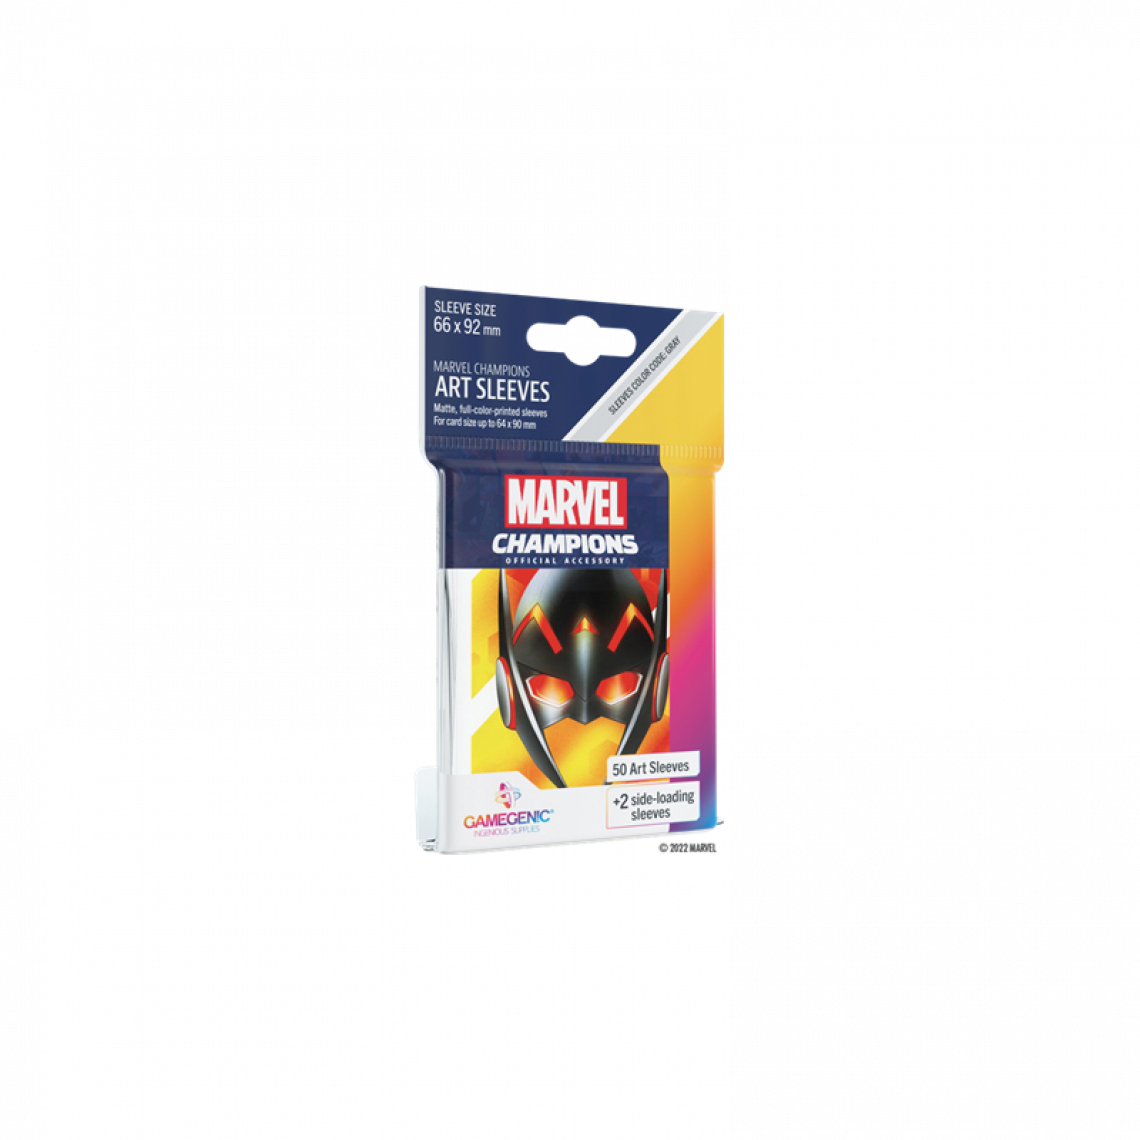 Ac-Deco - Protèges-cartes Wasp - Marvel Champions - 6,6 x 9,2 cm - 50 sachets - Carte à collectionner